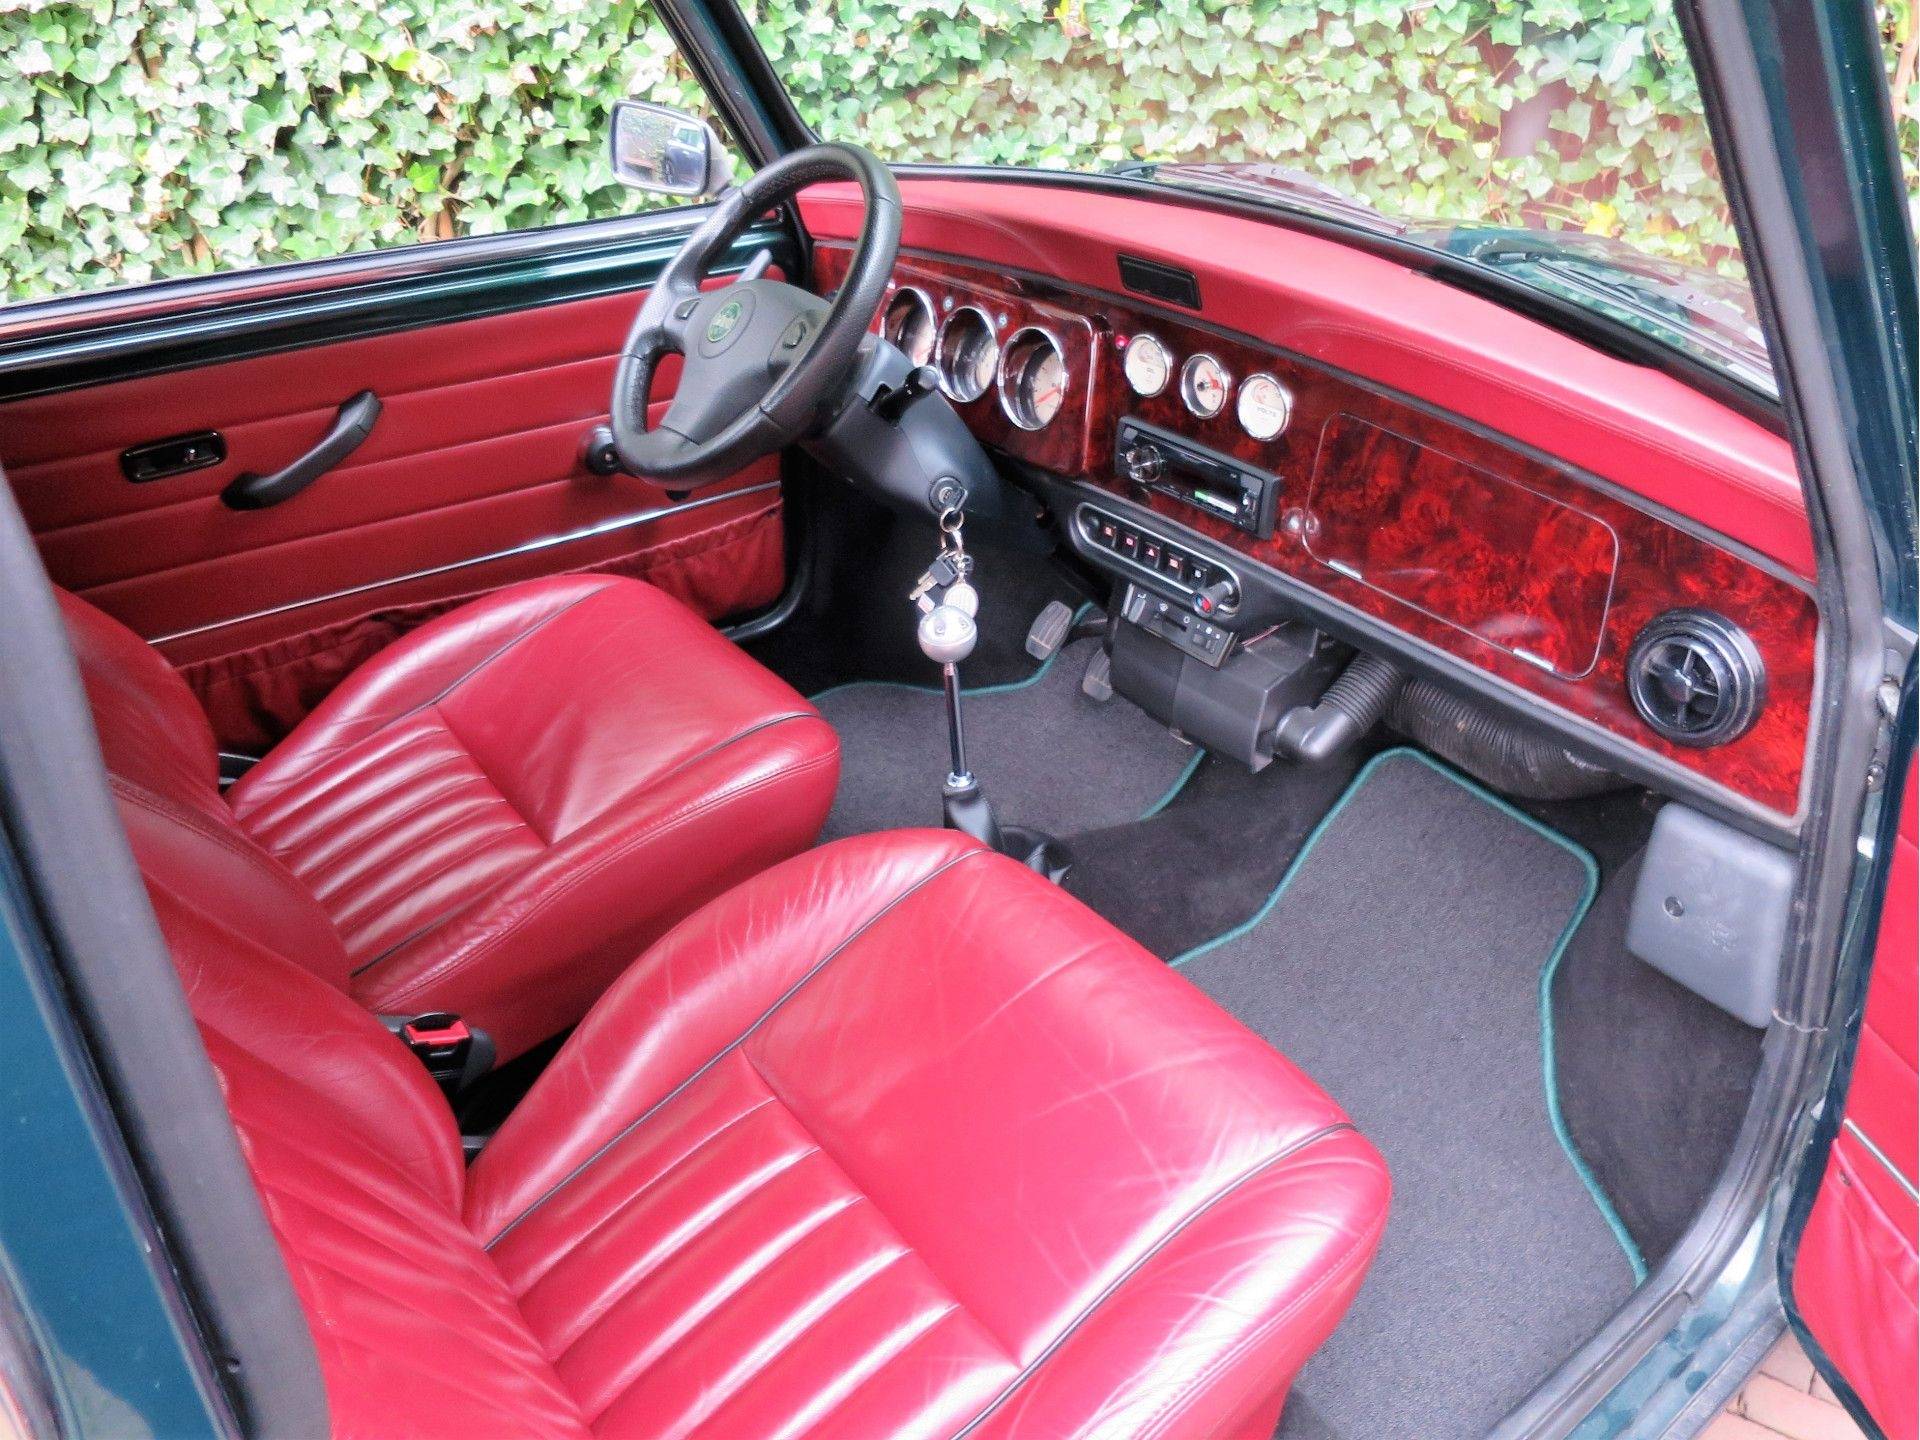 MINI Cooper Sport 1.3 MPI met leder interieur, houten dash en 13" velgen - 40/50